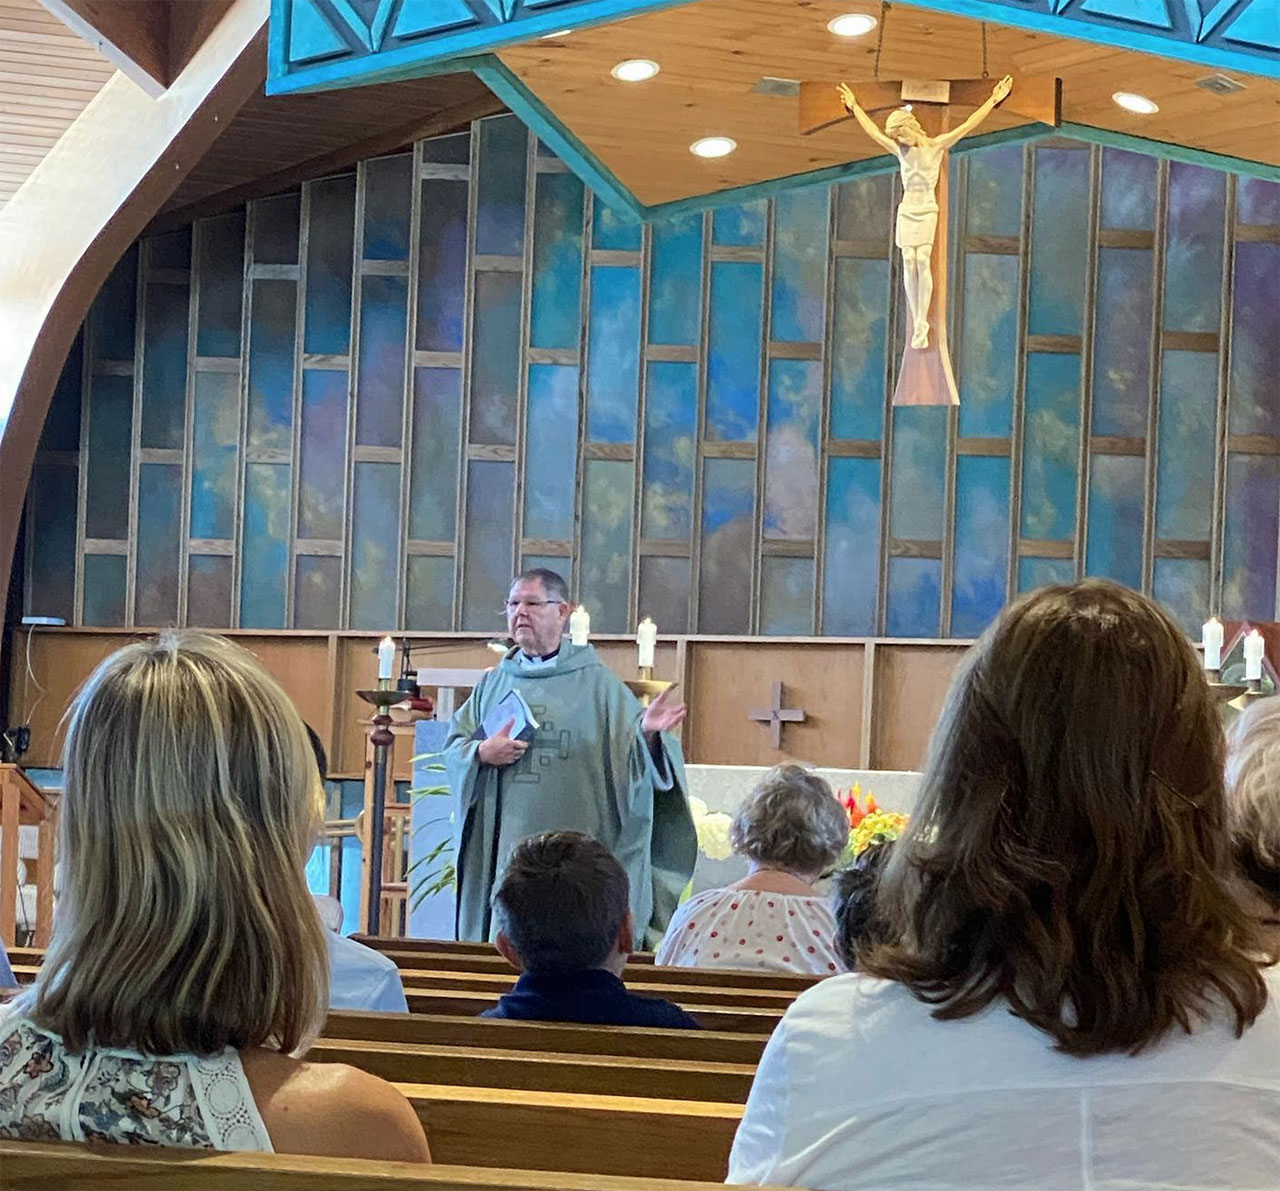 Fr Shane at St George Catholic Church in Long Lake, MN